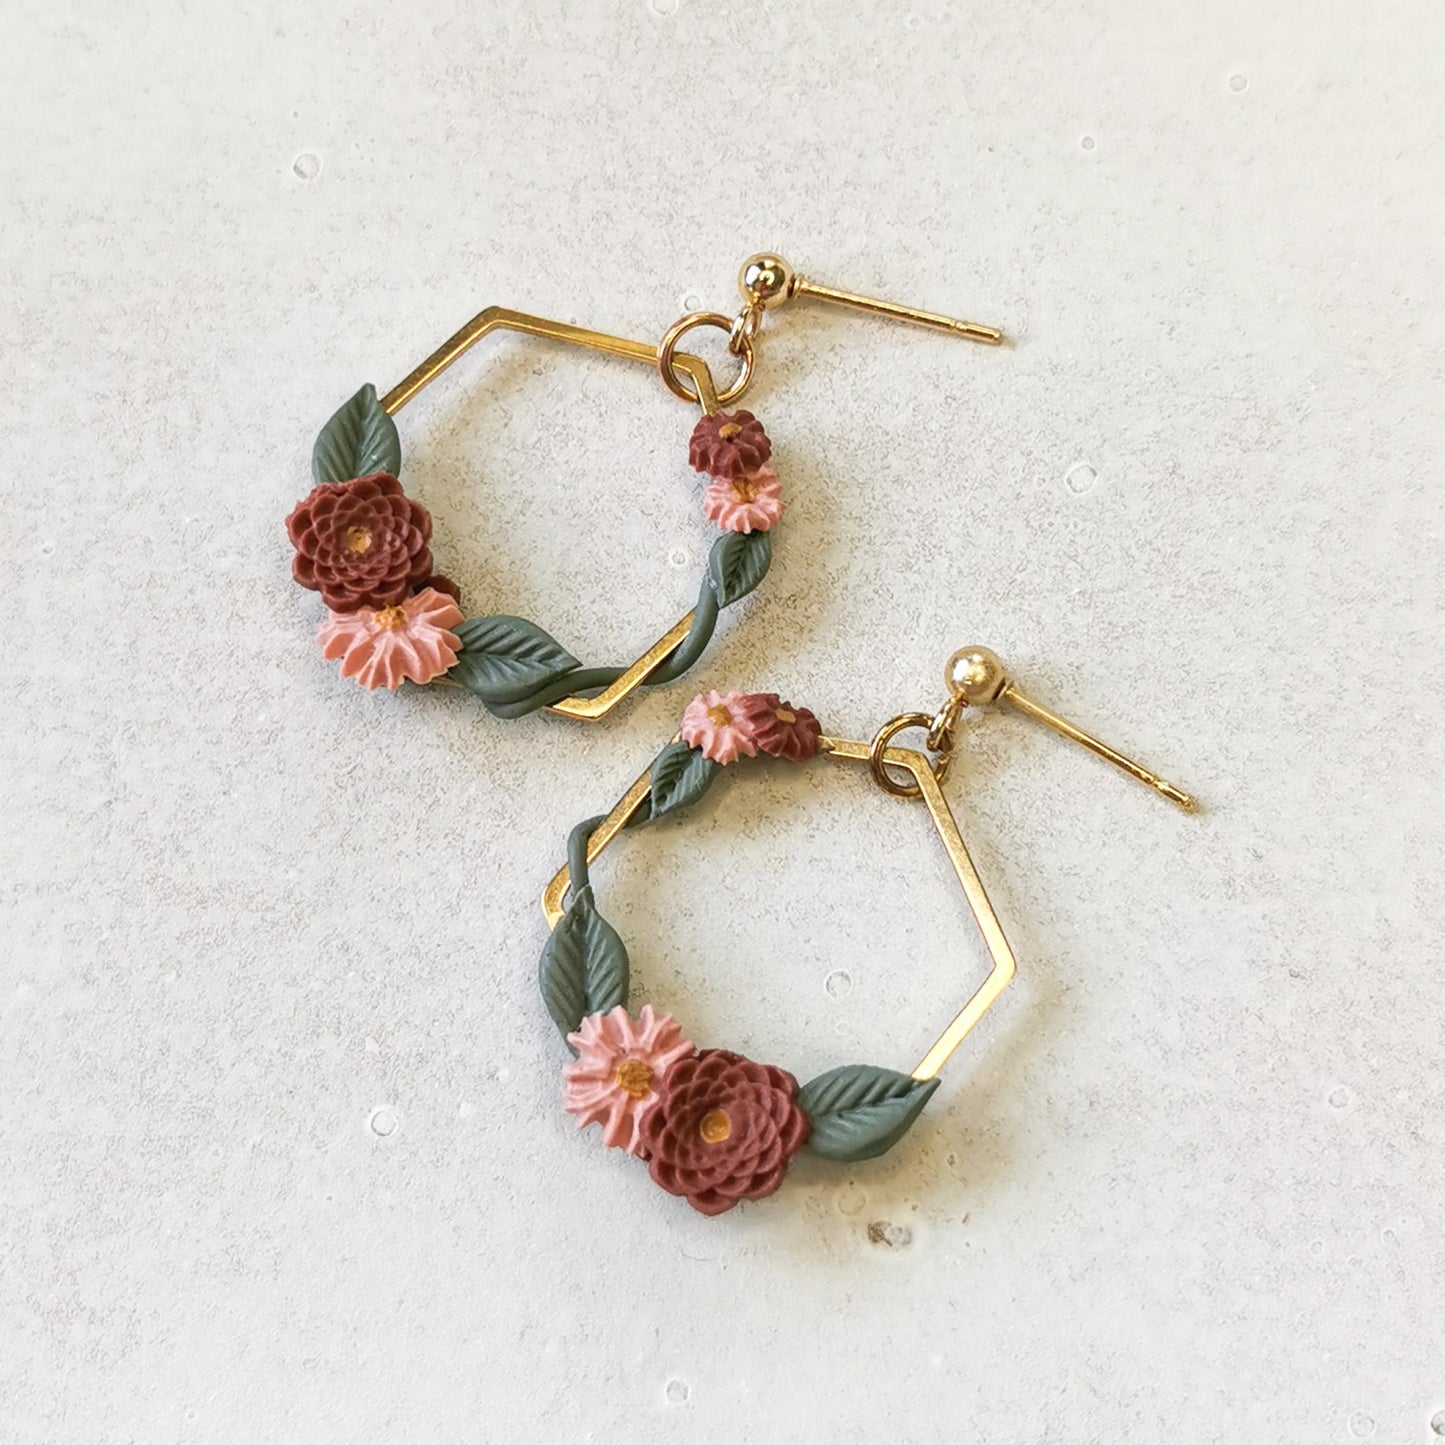 Gold handmade flower earrings for sensitive ears NZ